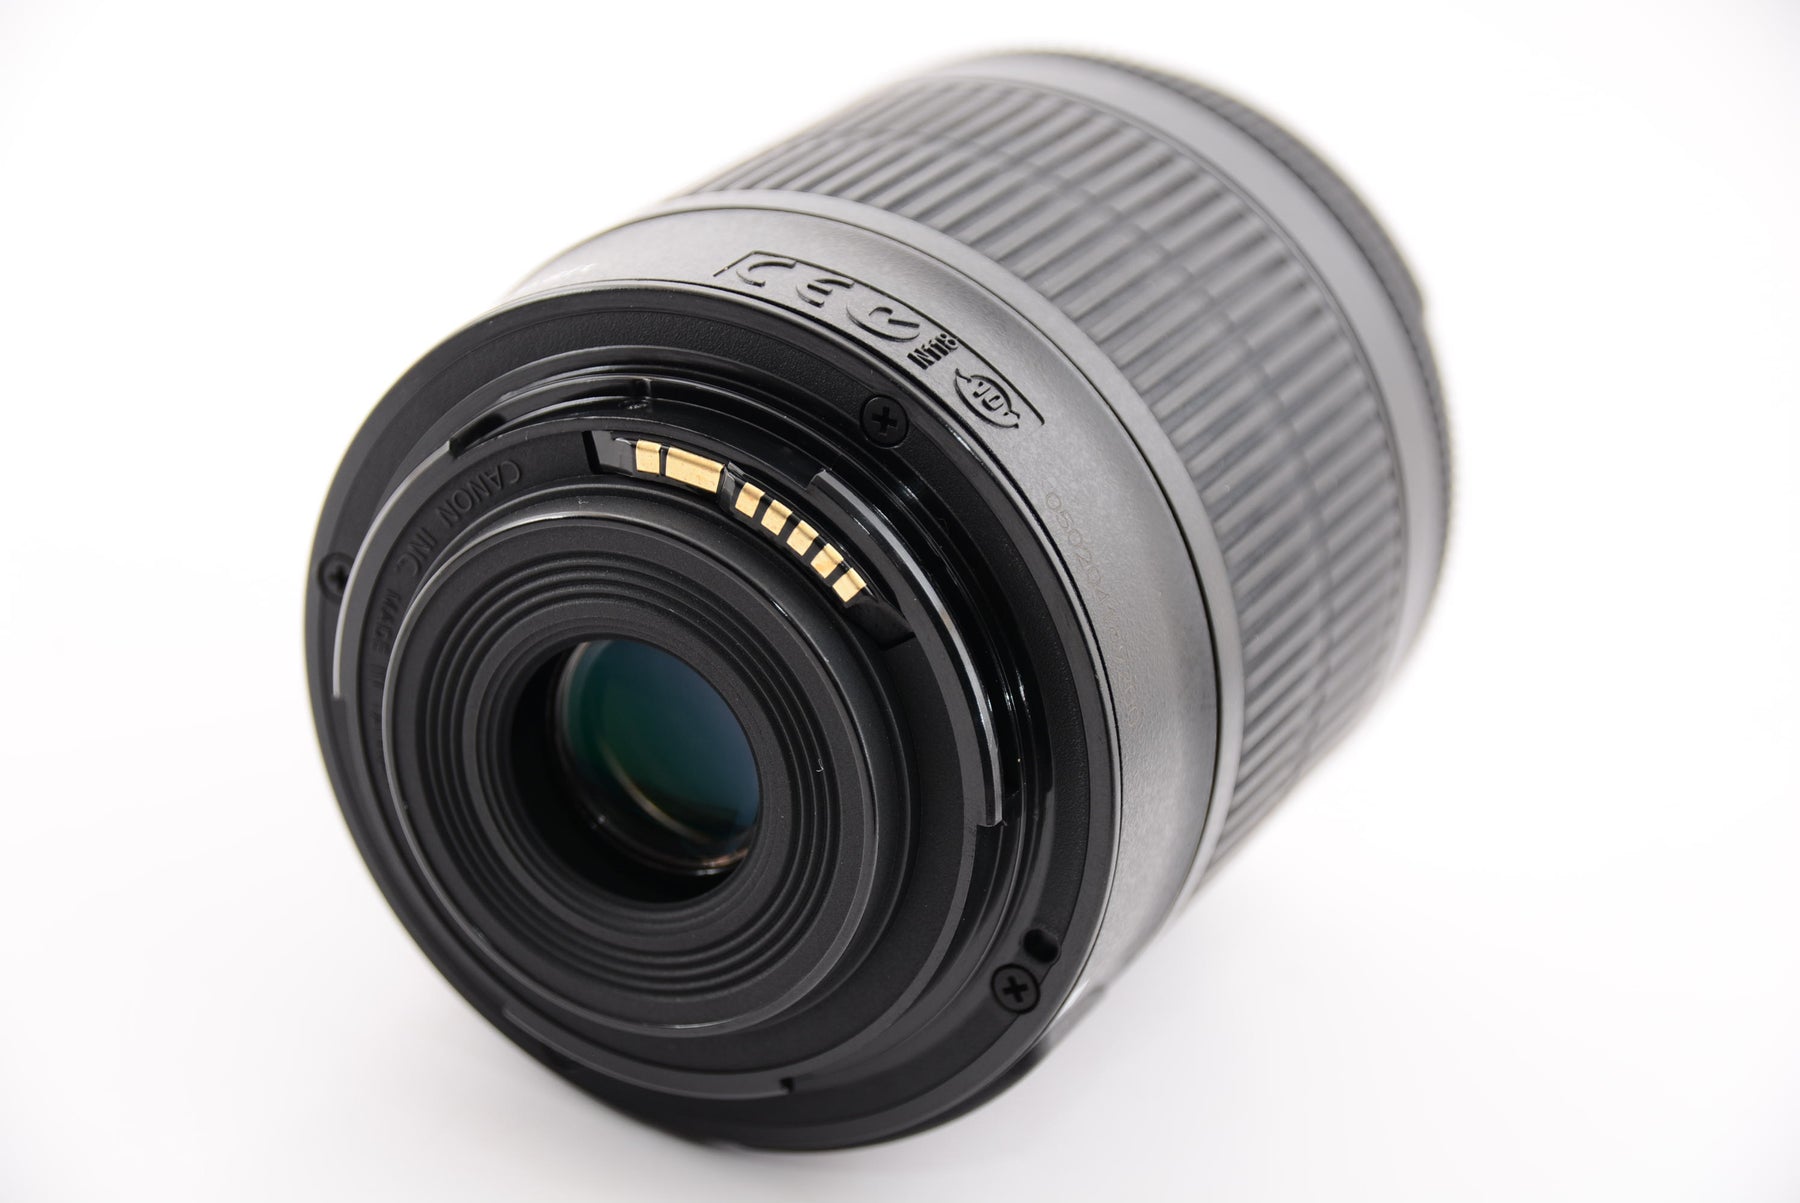 Canon デジタル一眼レフカメラ EOS Kiss X7 レンズキット EF-S18-55mm F3.5-5.6 IS STM付属 KISSX7-1 - 4